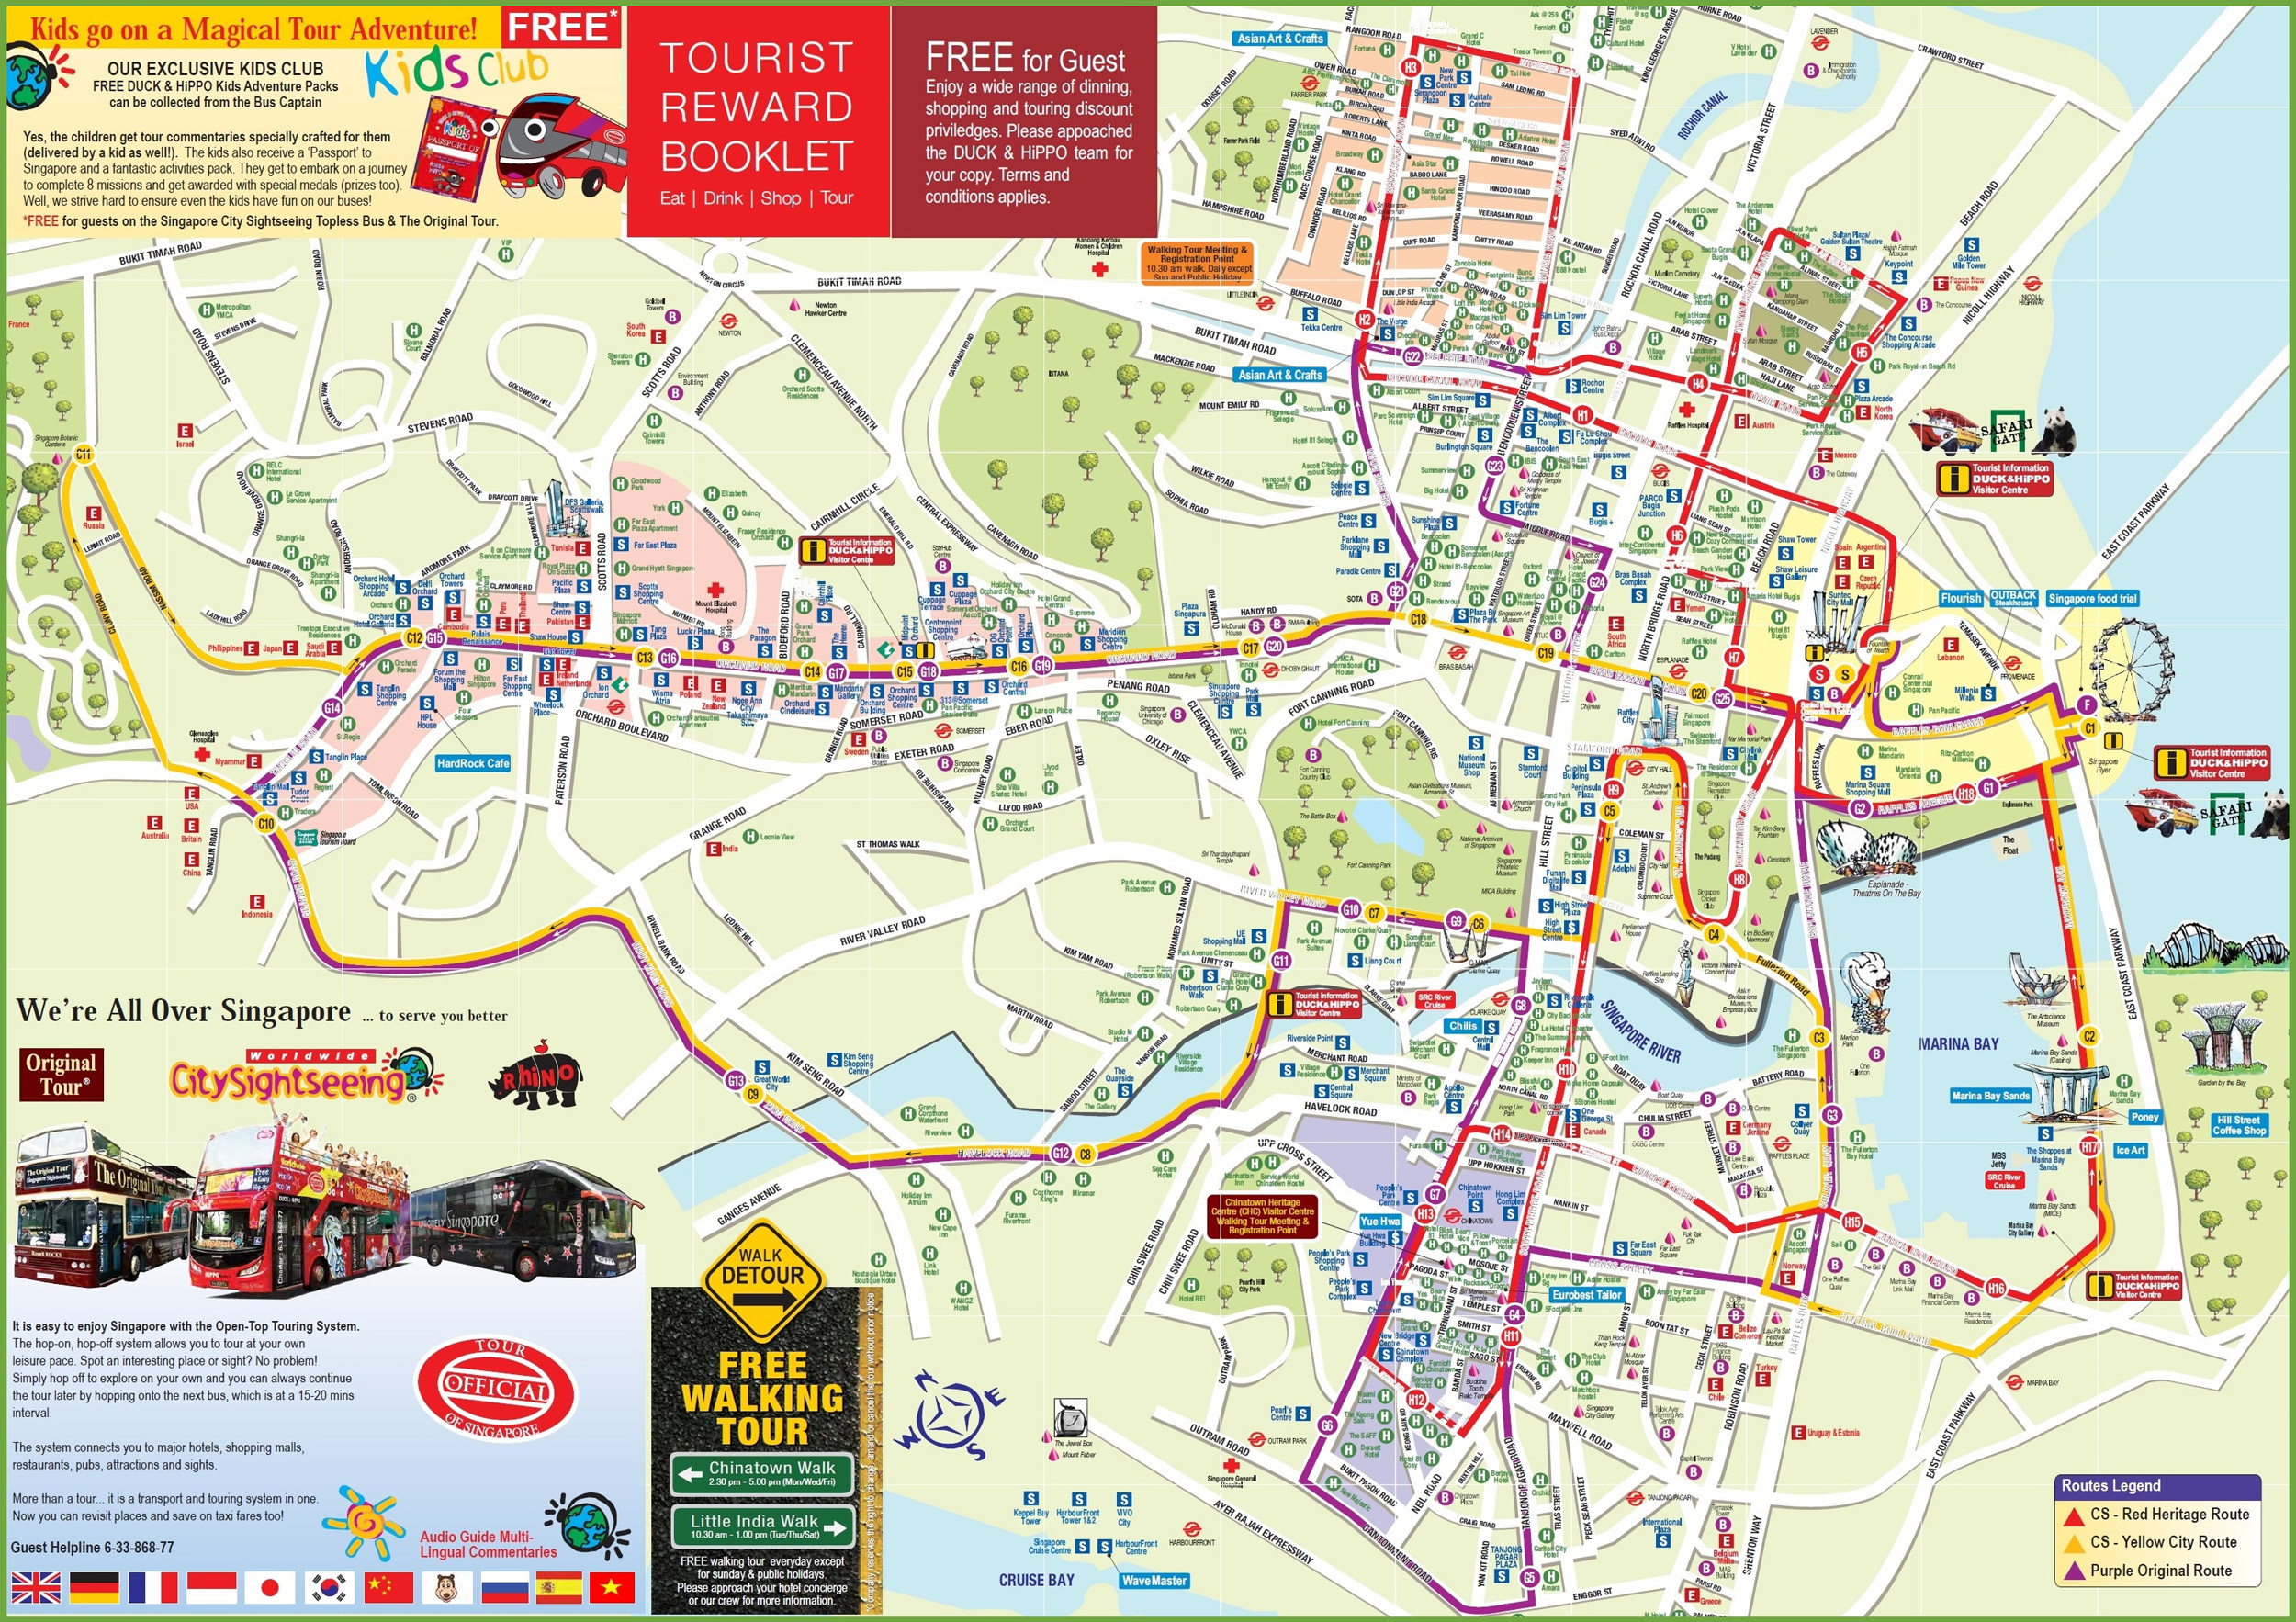 Bản đồ Singapore 2024 là tài nguyên không thể thiếu cho bất kỳ chuyến đi nào đến thành phố này. Từ địa điểm tham quan đến nhà hàng và khách sạn, bạn sẽ tìm thấy mọi thứ trên bản đồ này. Nhanh chóng truy cập vào bản đồ để khám phá và chuẩn bị những kế hoạch cho chuyến đi tuyệt vời của bạn đến Singapore.